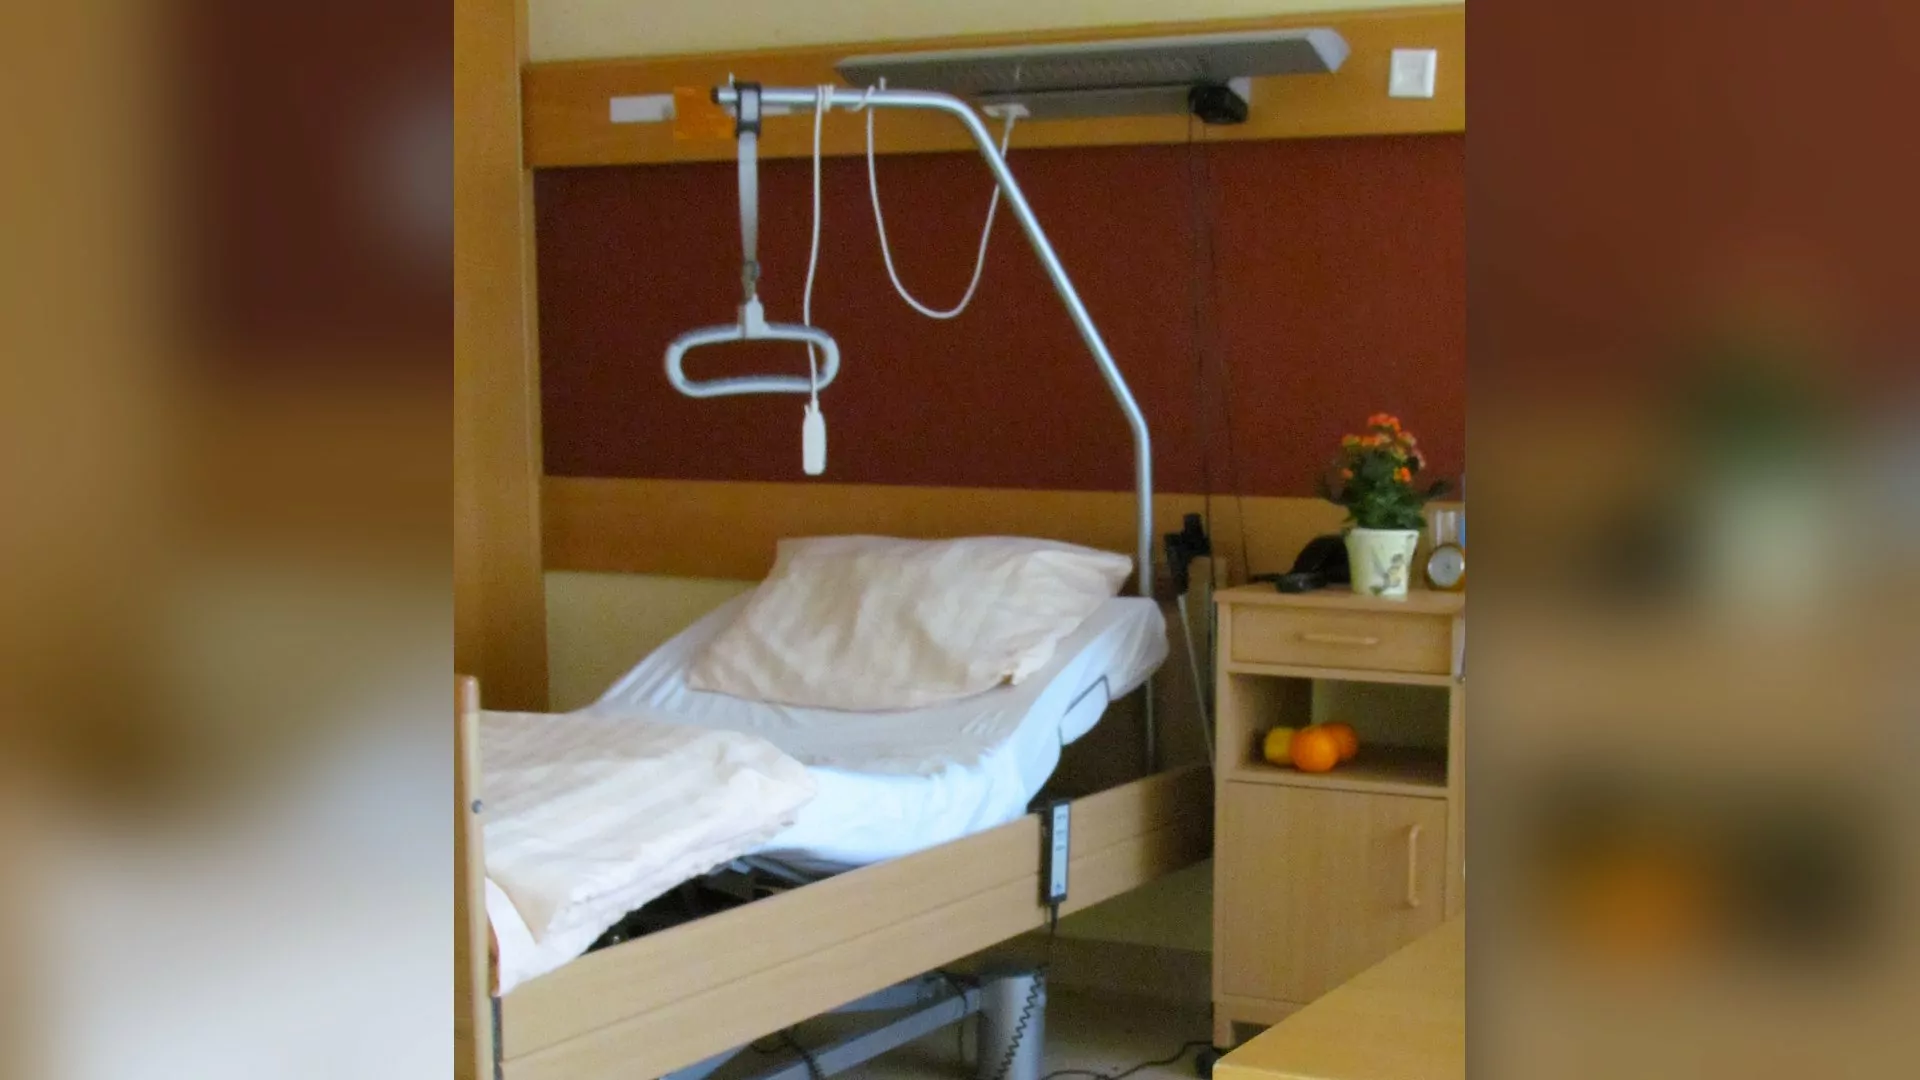 2005 wurde auf der 5. Etage eine Reihe von Doppelzimmern für geriatrische Patienten geschaffen. Um die notwendigen Platzvoraussetzungen für Rollstühle und Pflegebetten zu schaffen, mussten dazu jeweils zwei Einzelzimmer entkernt werden.